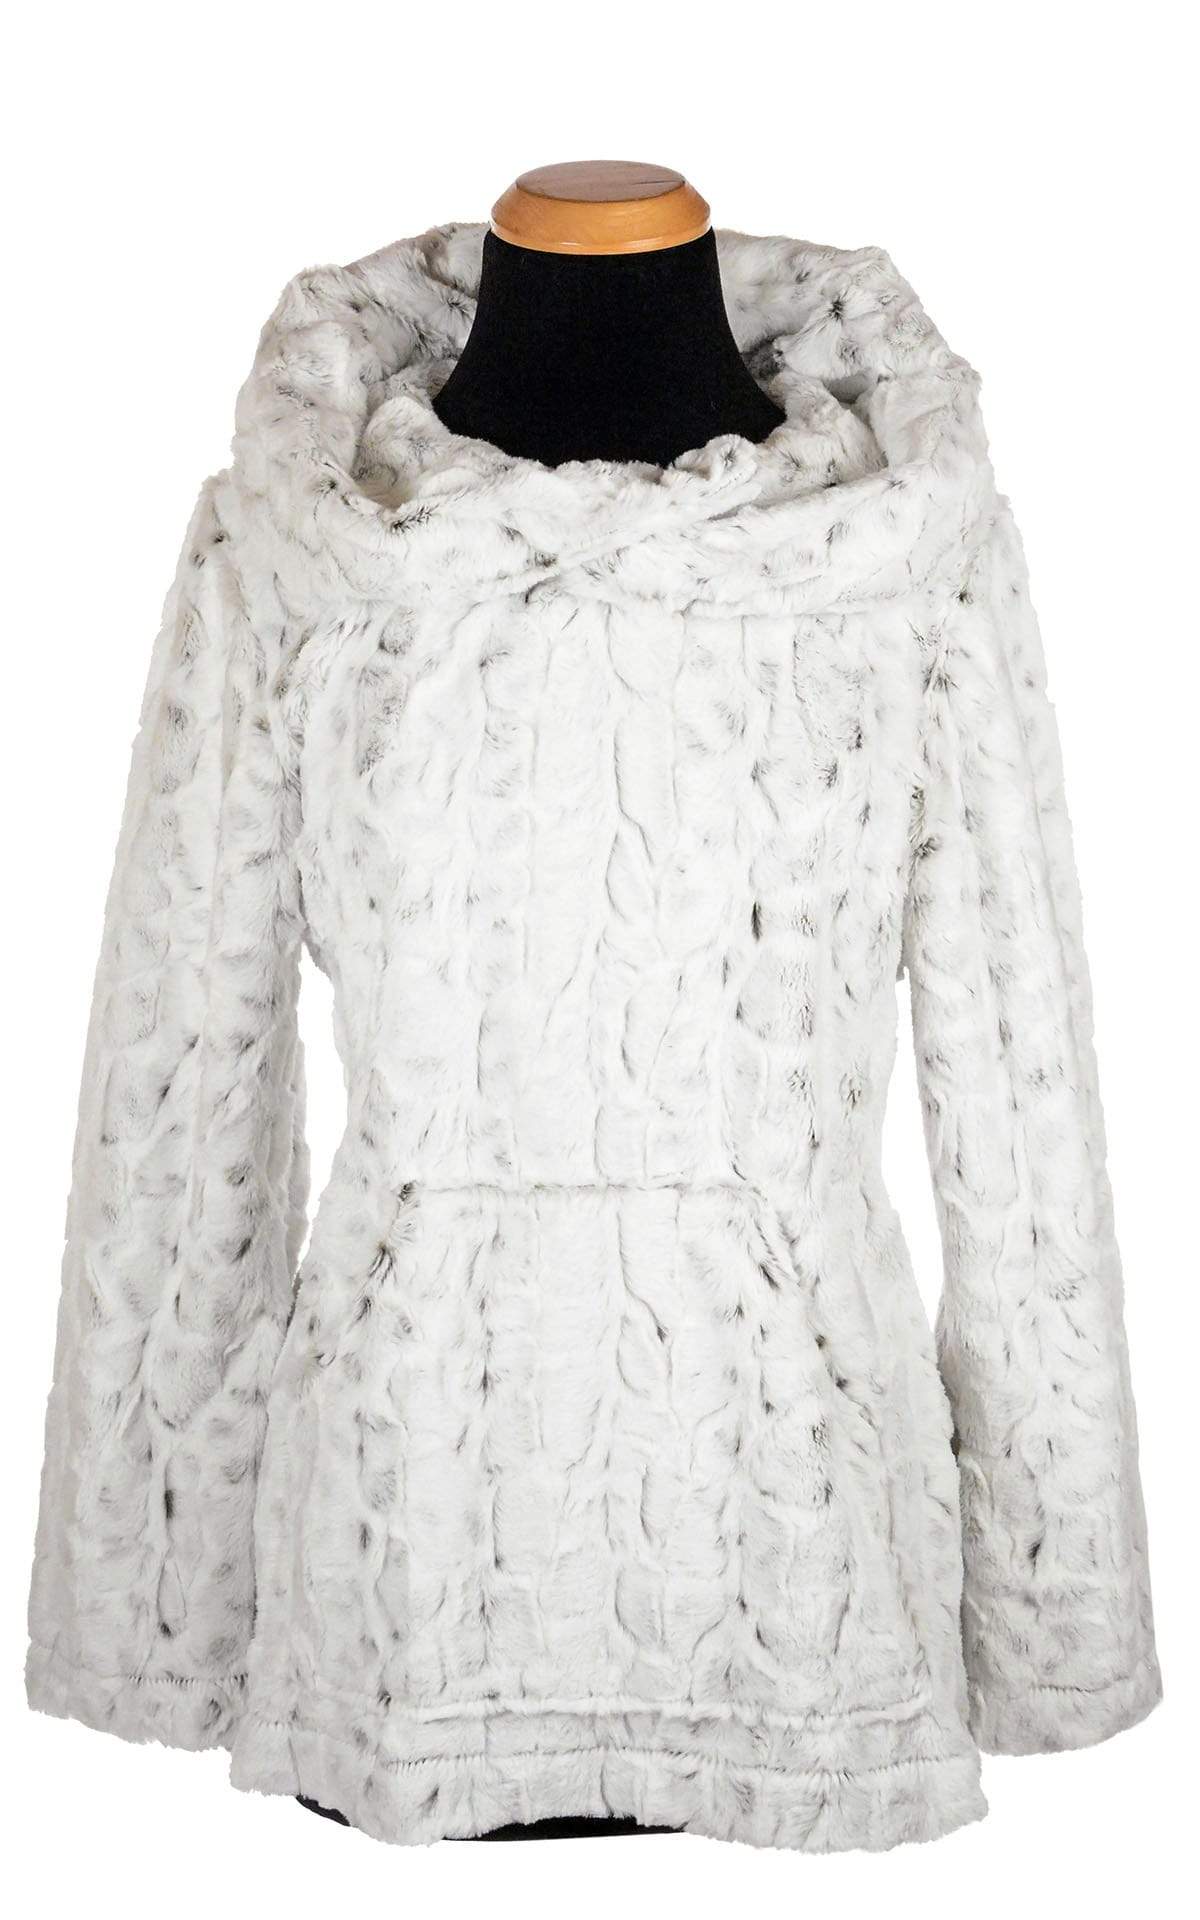 Hooded Lounger - Luxury Faux Fur in Winters Frost